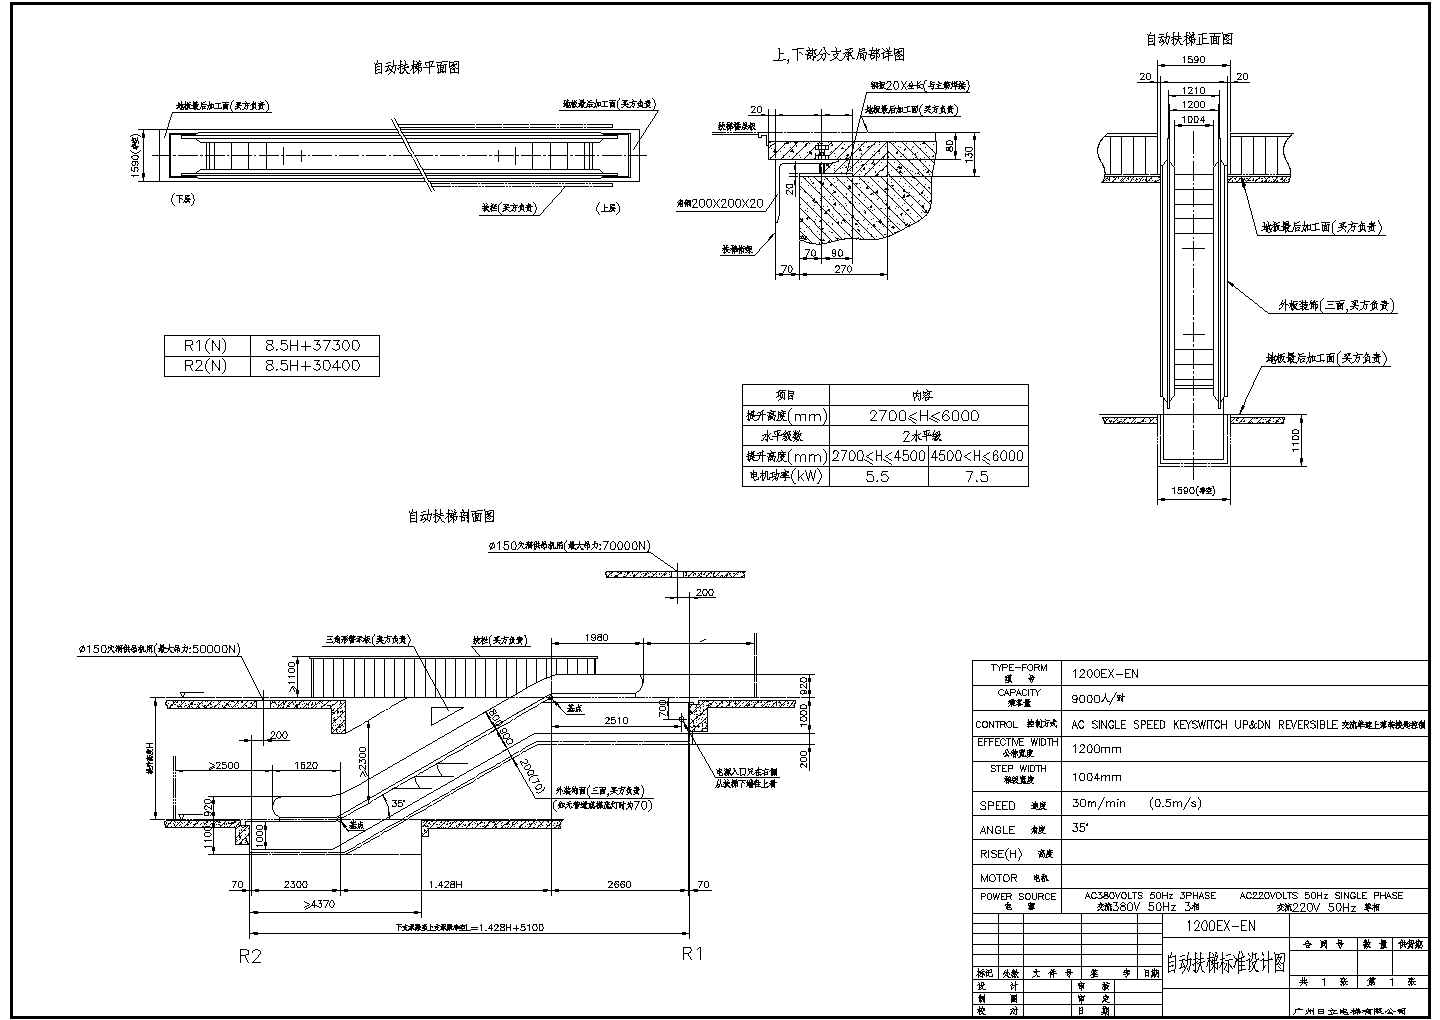 广州某电梯公司最新开发自动扶梯标准设计图